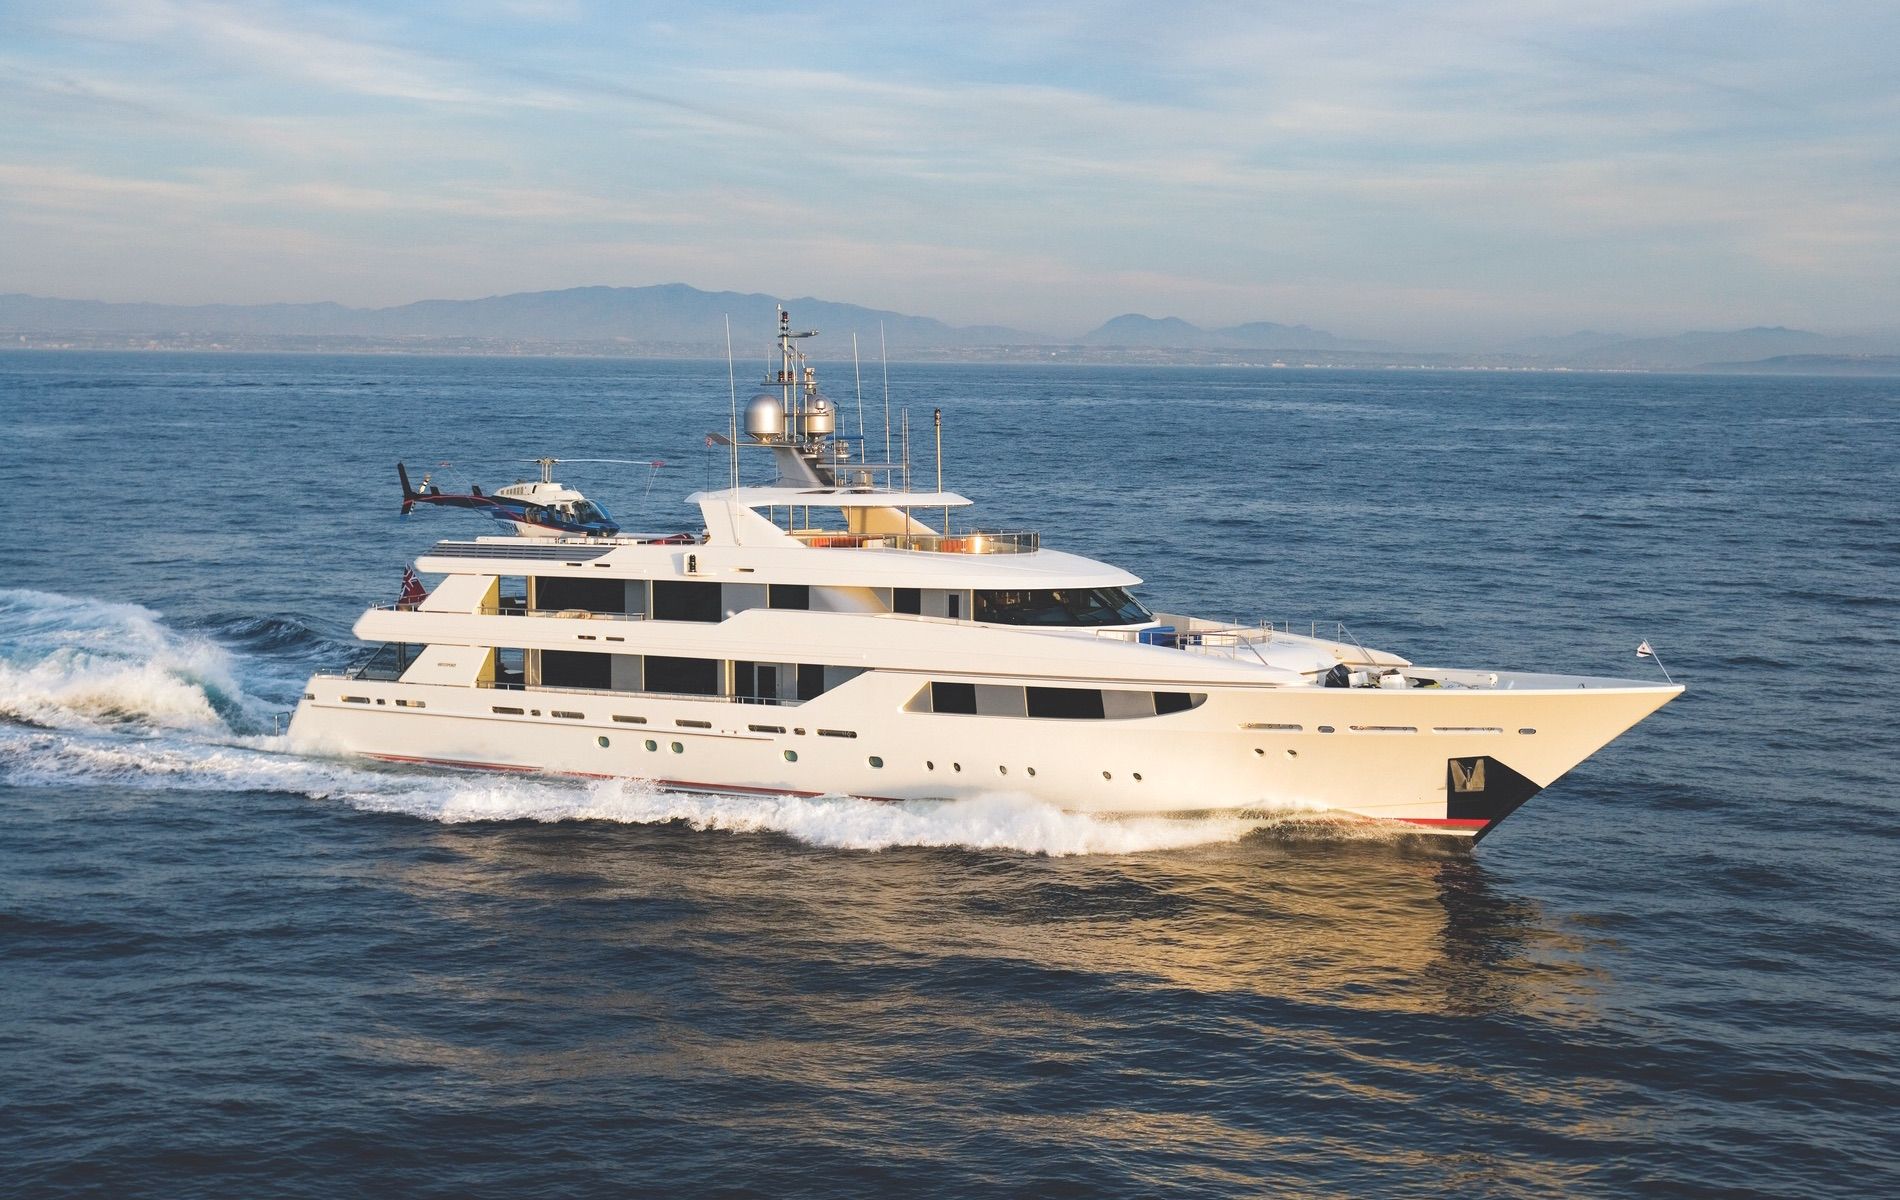 EVVIVA Yacht • Westport • 2014 • Value $30,000,000 • Owner John Orin Edson